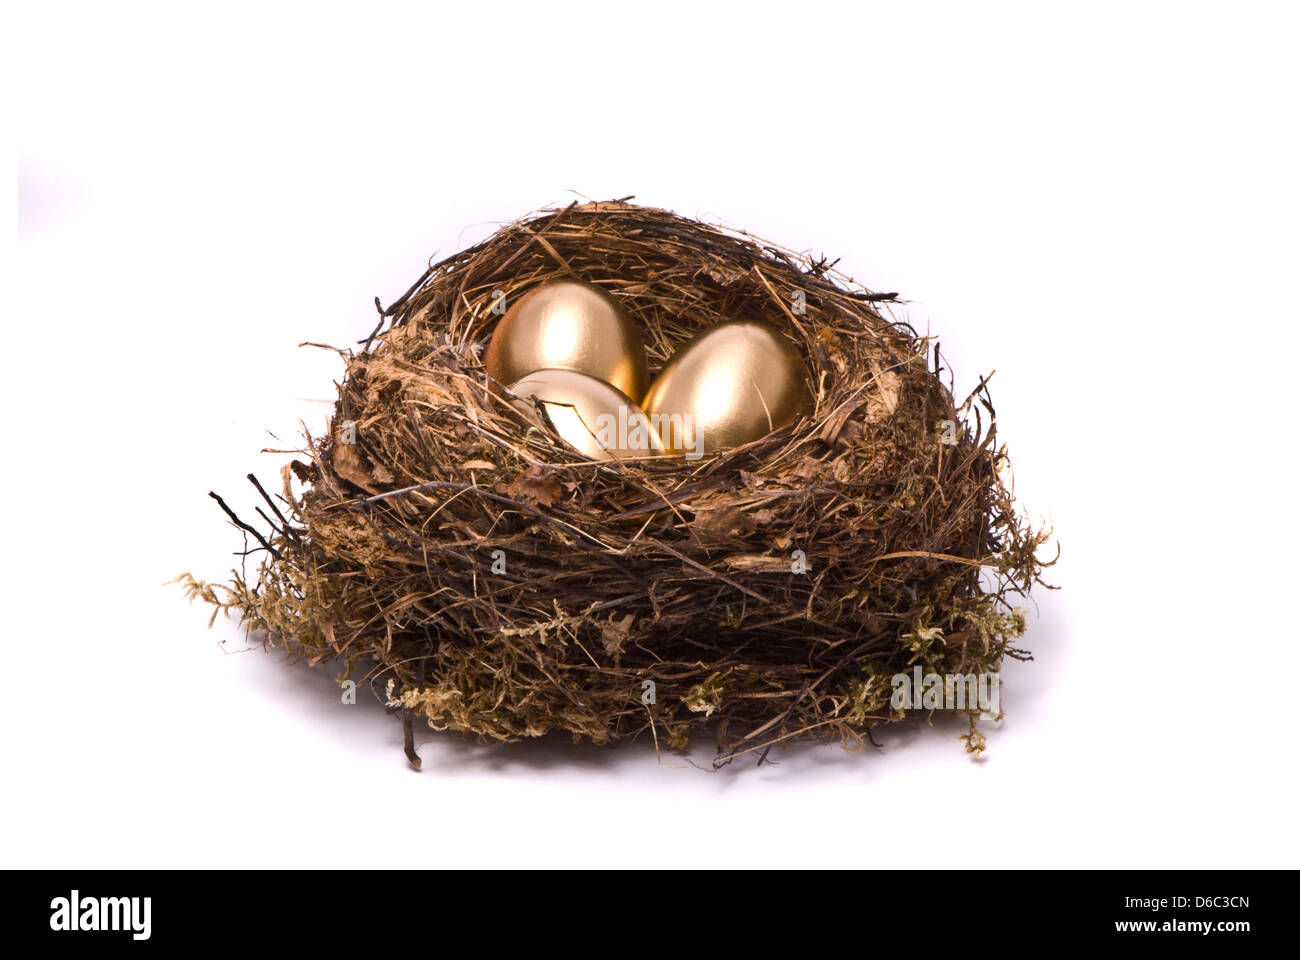 Goldenen Eiern in einem nest Stockfoto